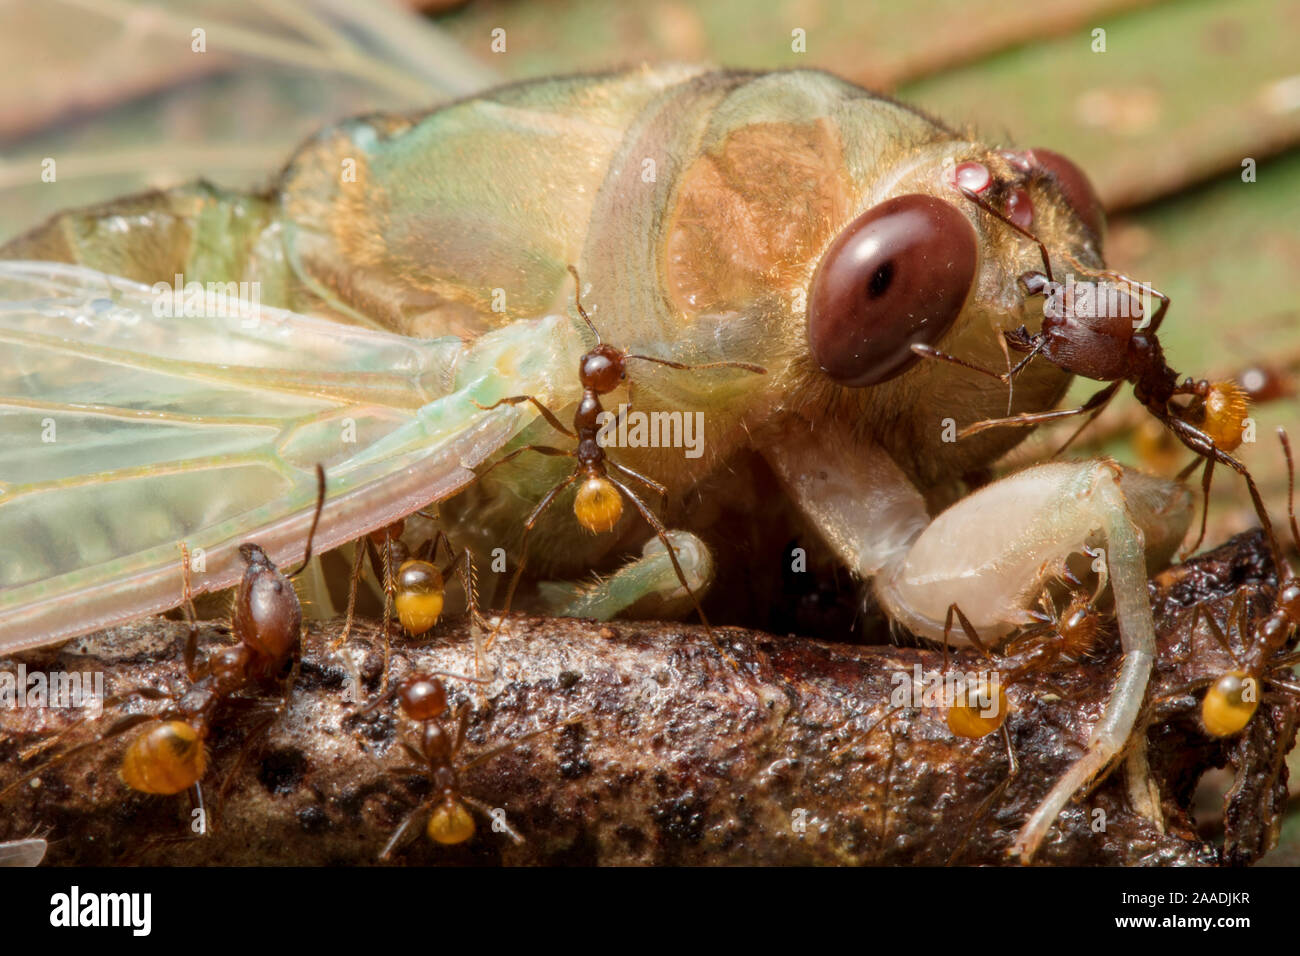 Ameisen (formicidae) Angriff auf neu entstandene Zikade (Cicadacae), Yasuni Nationalpark, Ecuador. Hoch gelobt in der Wirbellose Kategorie der Naturfotograf des Jahres Awards (WPOY)-Wettbewerb 2017. Stockfoto